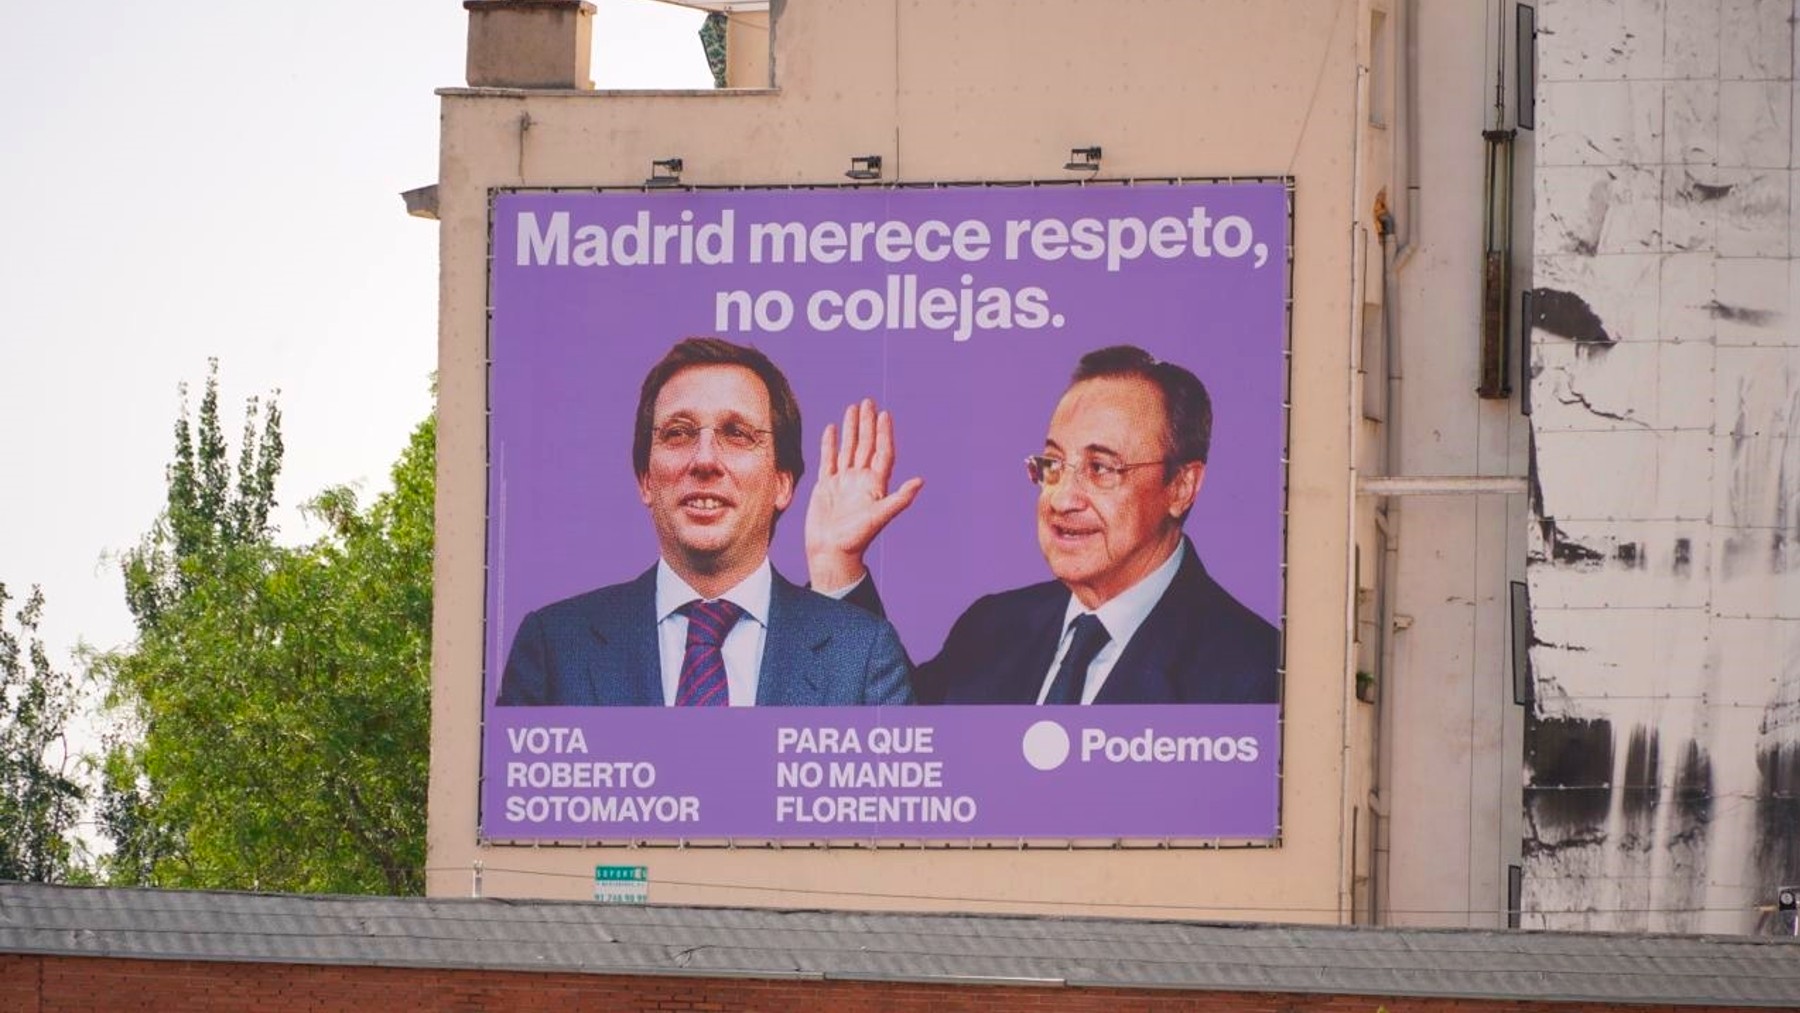 El cartel de Podemos con Florentino y Almeida.